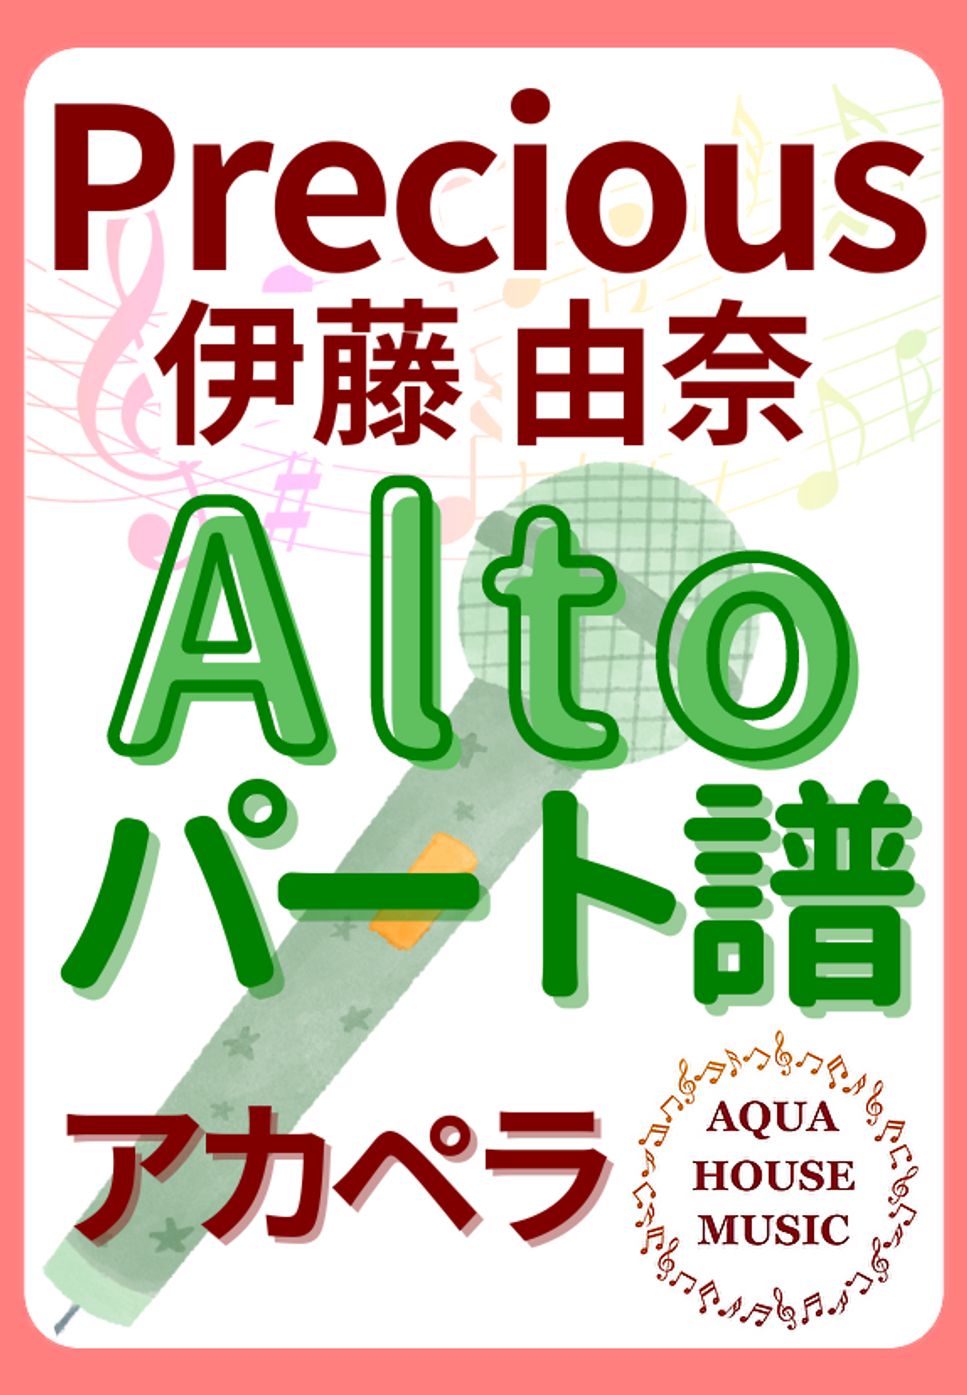 伊藤 由奈 - PRECIOUS (アカペラ楽譜♪Altoパート譜) by 飯田 亜紗子